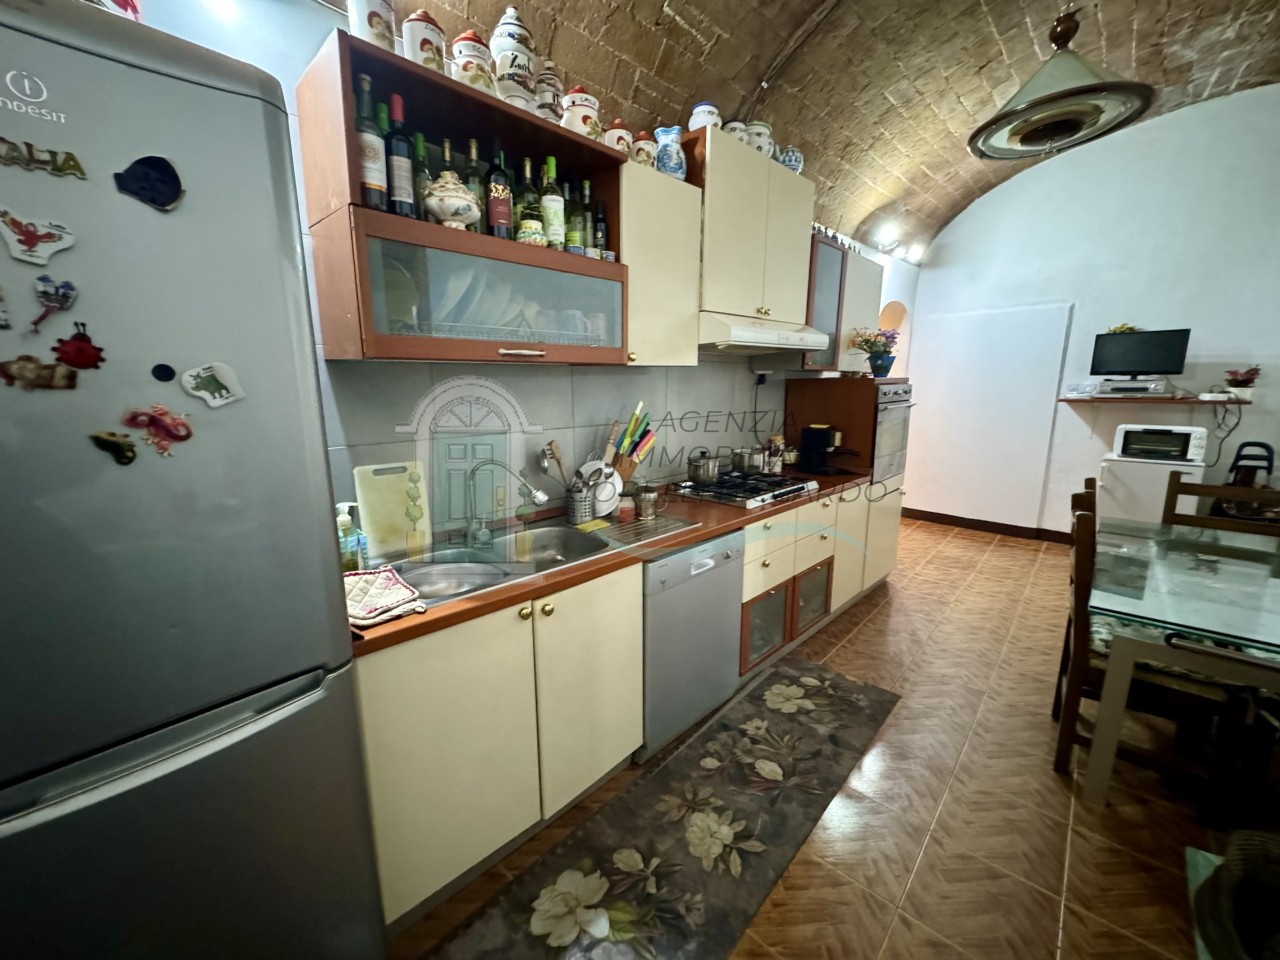 Appartamento in vendita a Siena, 3 locali, prezzo € 220.000 | PortaleAgenzieImmobiliari.it